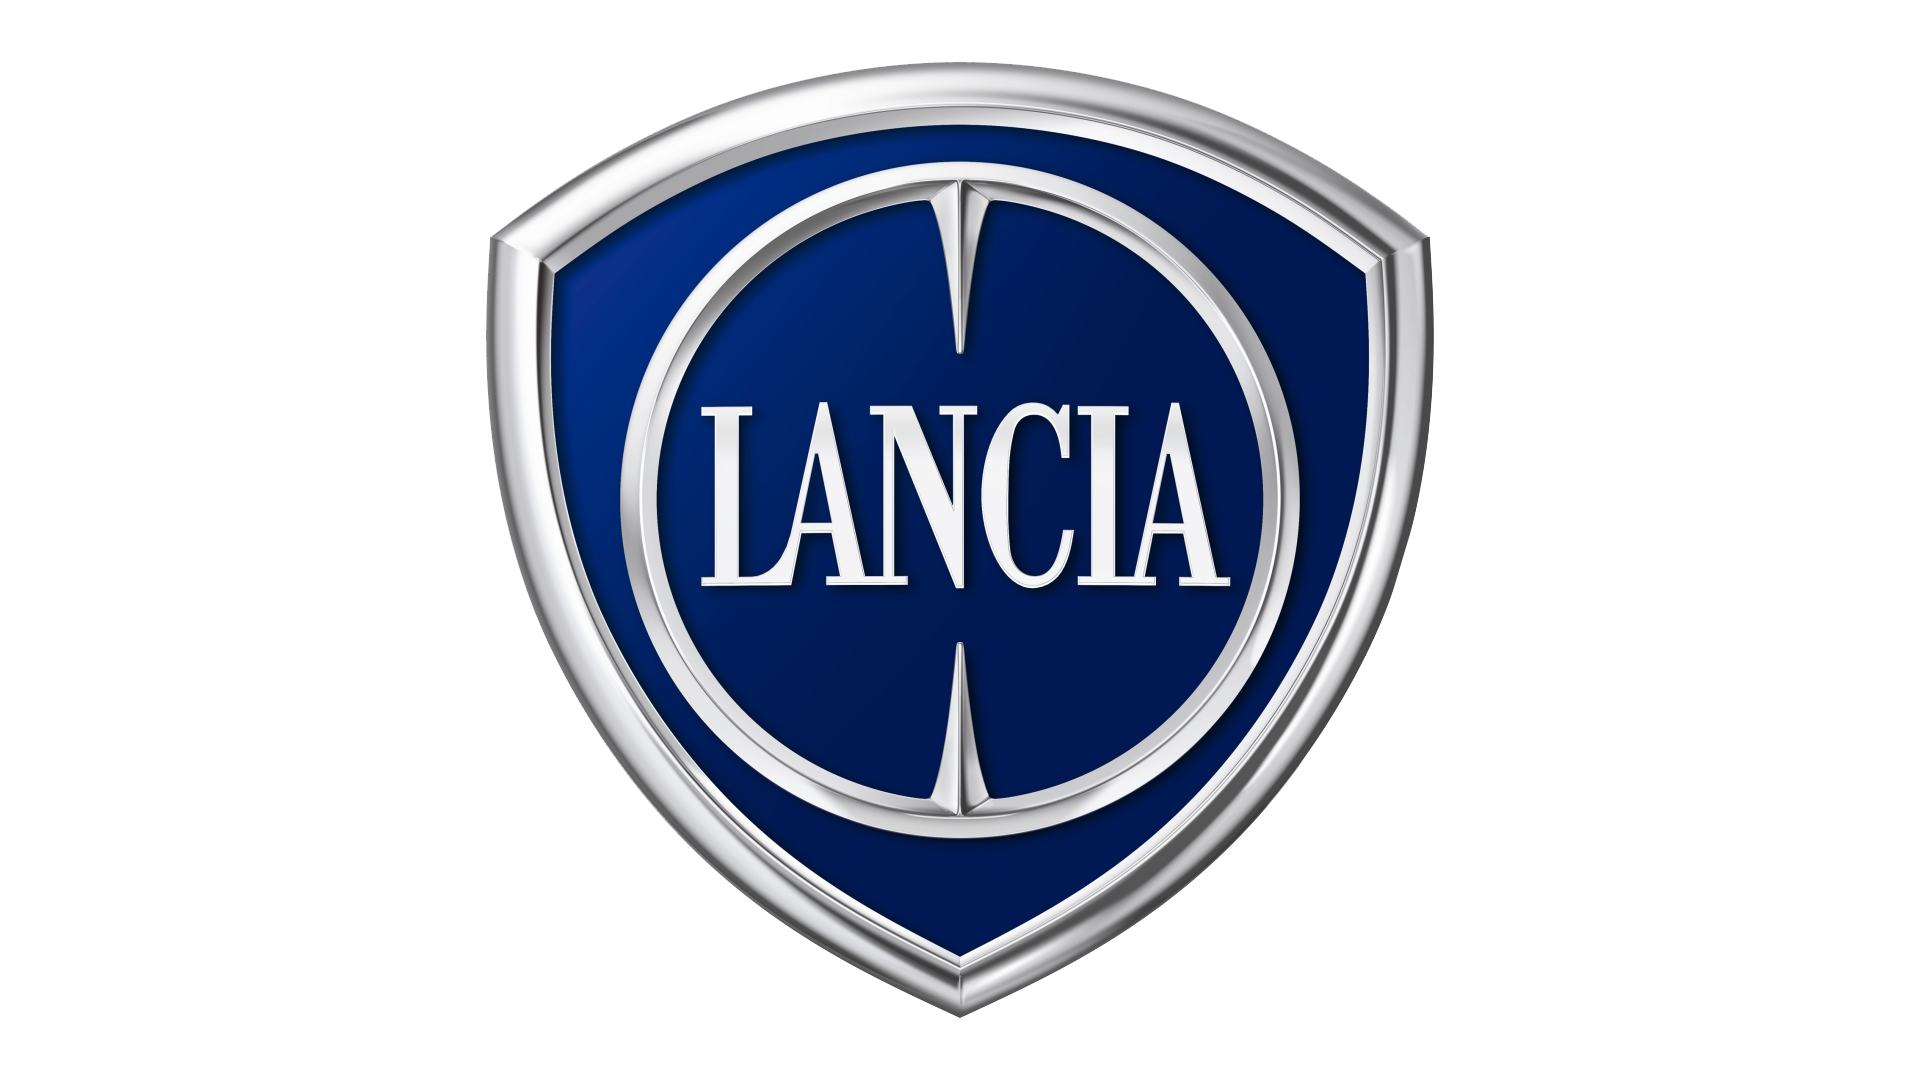 Lancia-logo-2007-1920x1080.png